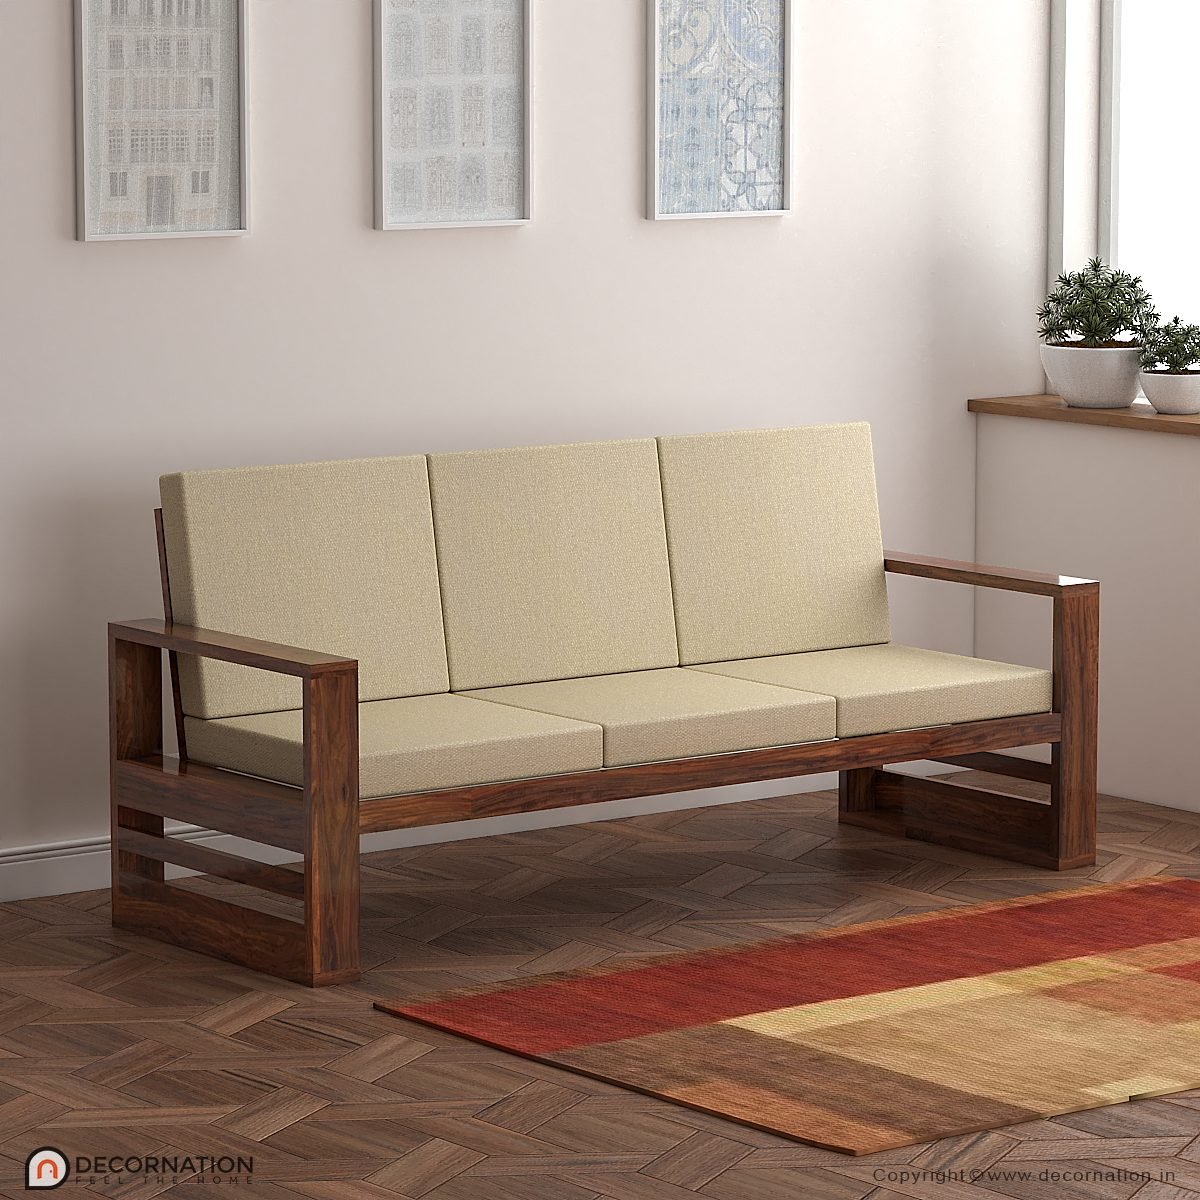 Celeste Wooden Living Room 3 Seater Sofa Set